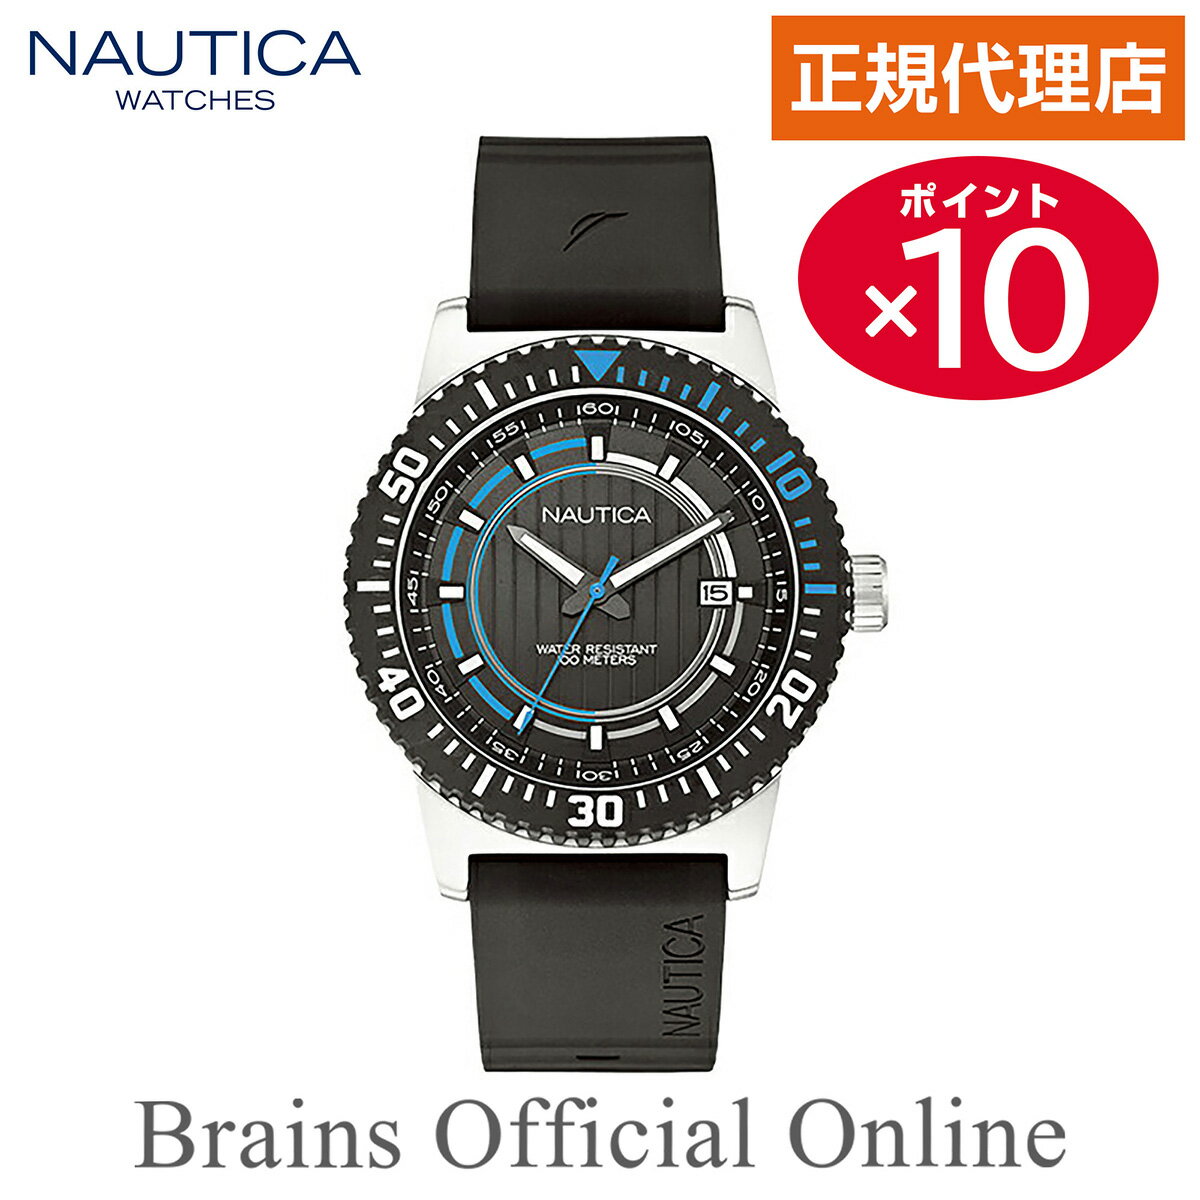 【公式特典ポイント10倍】 正規代理店 ノーティカ NAUTICA NST16 DATE デイト ウォッチ A12636G メンズ クオーツ ブランド 腕時計